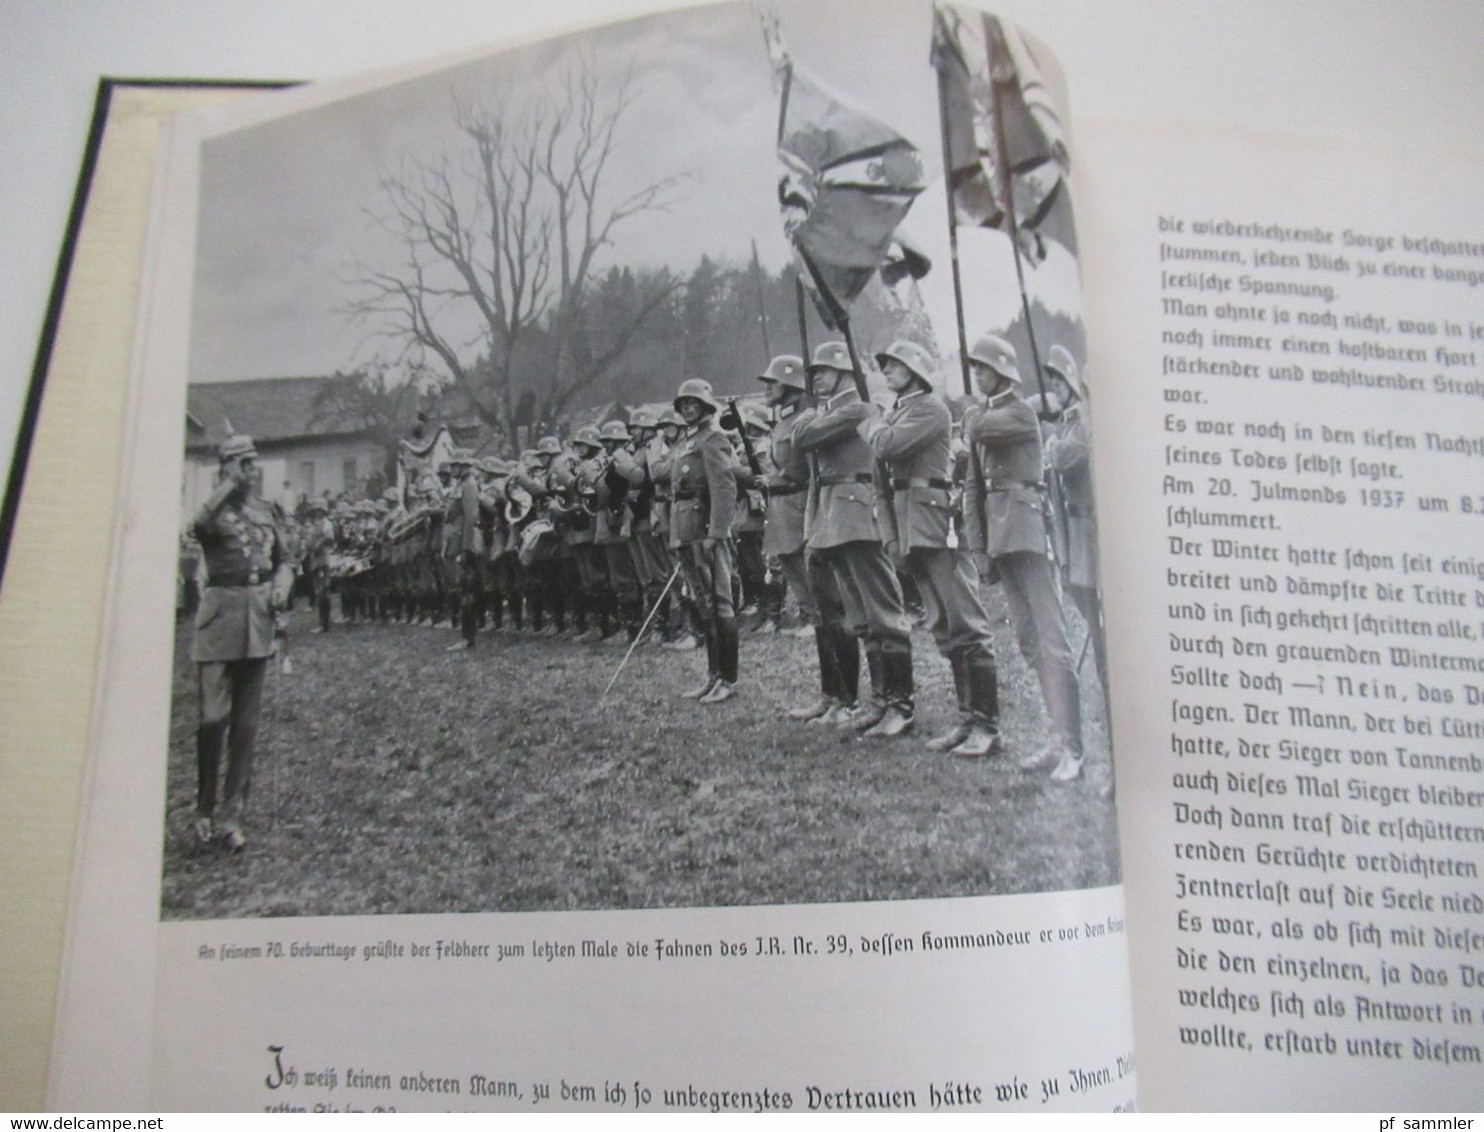 1938 Der letzte Weg des Feldherrn Erich Ludendorff Ludendorffs Verlag München Text und Bildbereicht Trauerfeierlichkeite